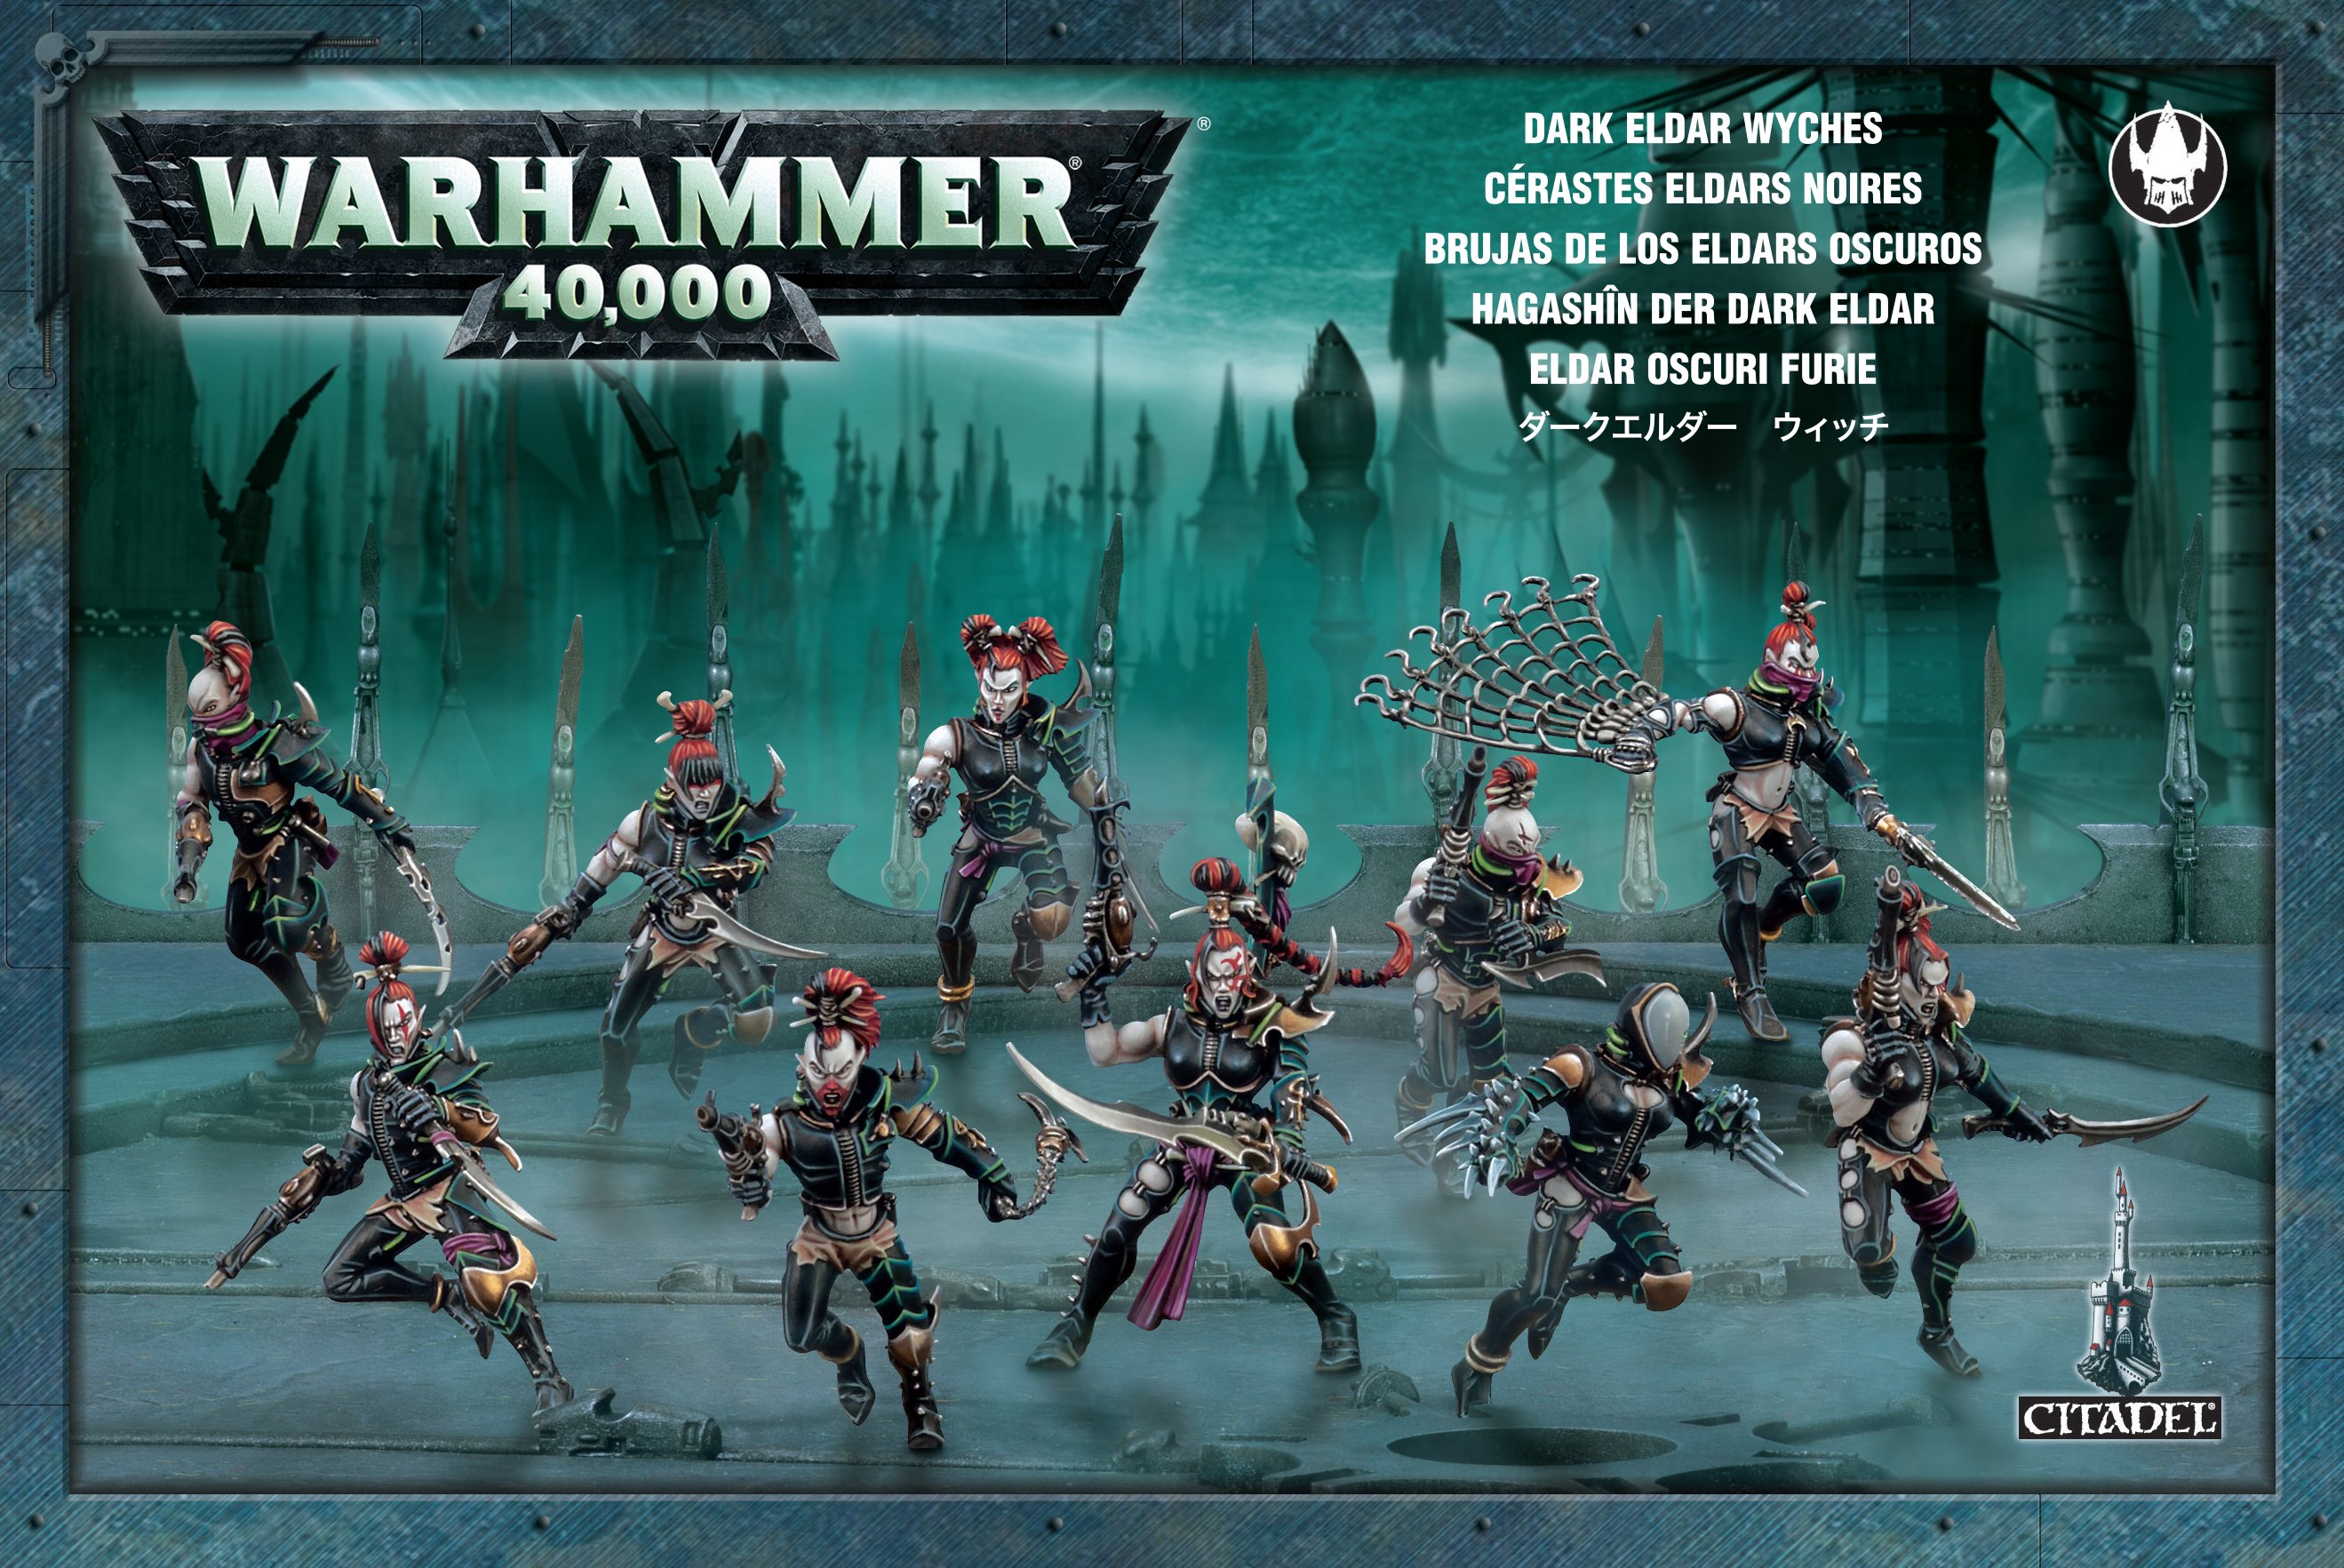 Warhammer 40,000: Drukhari: Wyches 